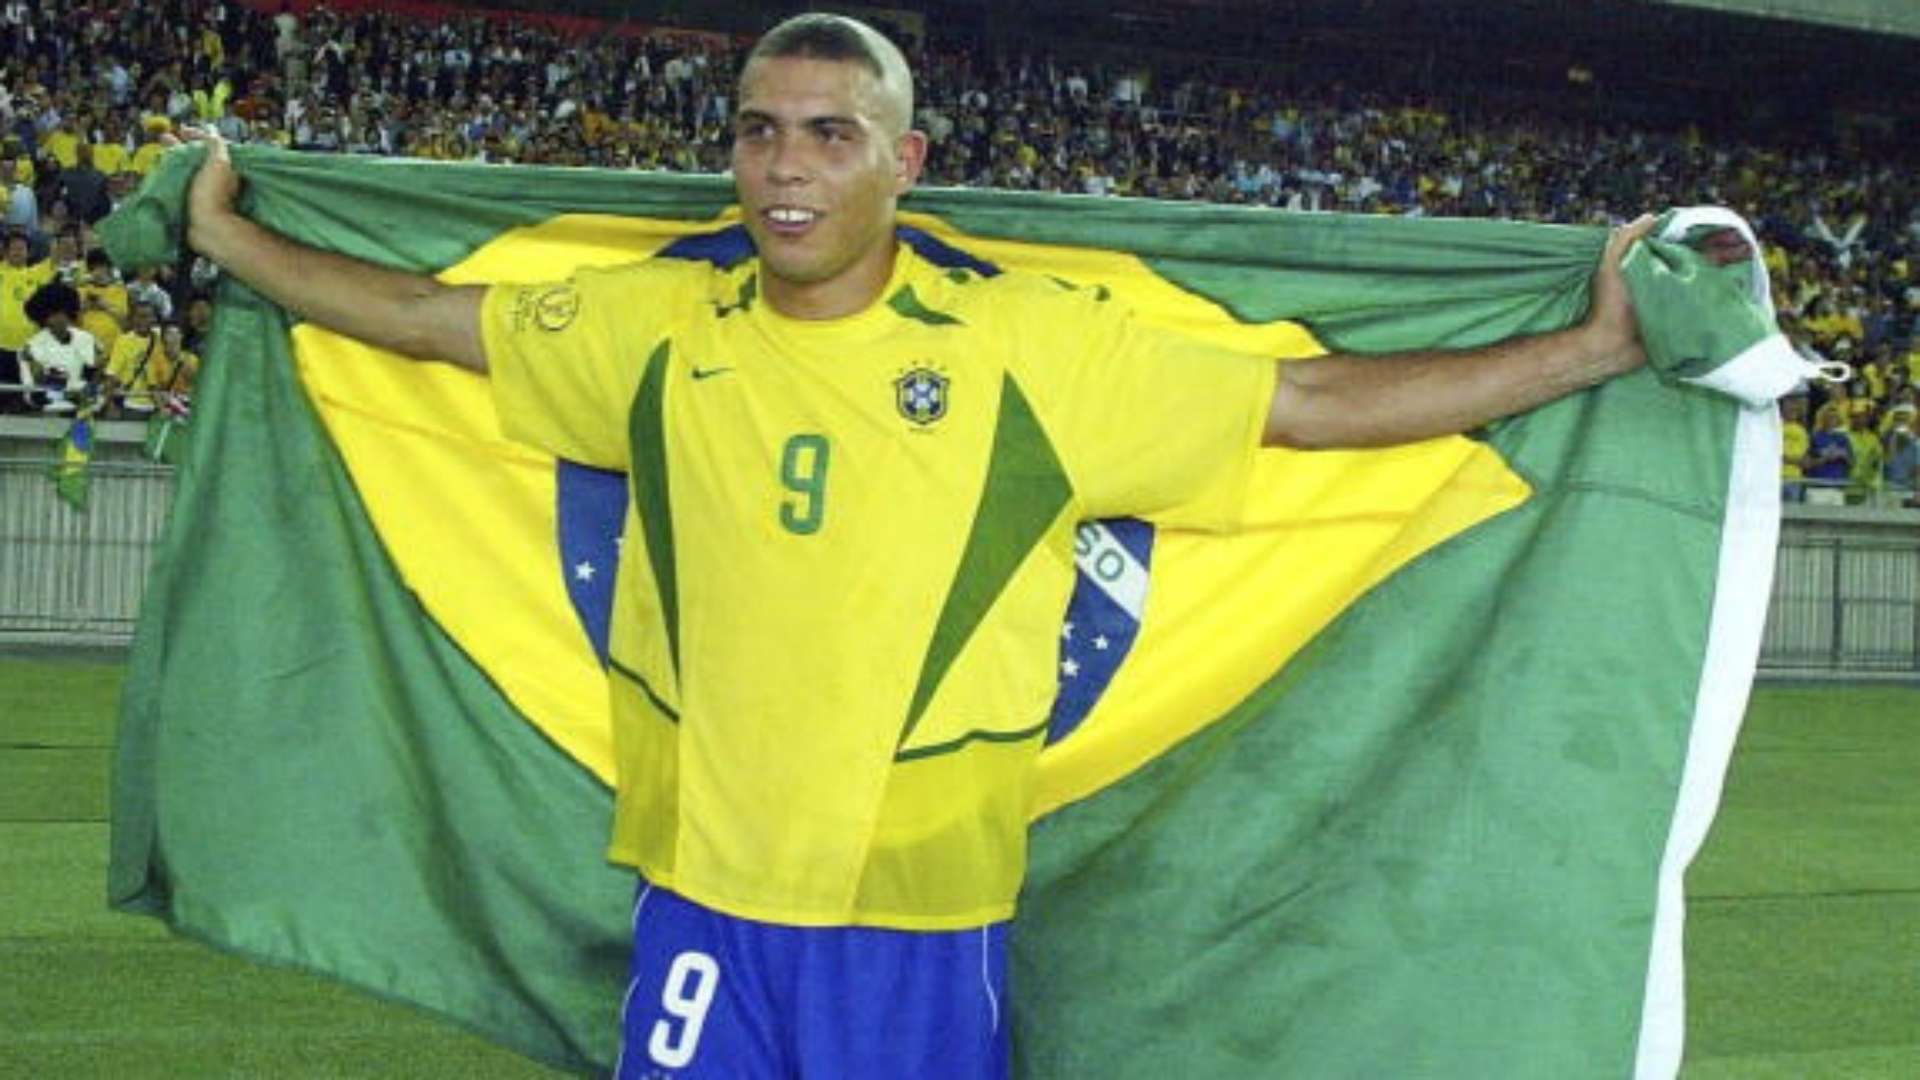 Ronaldo Nazario de Lima - Brazil